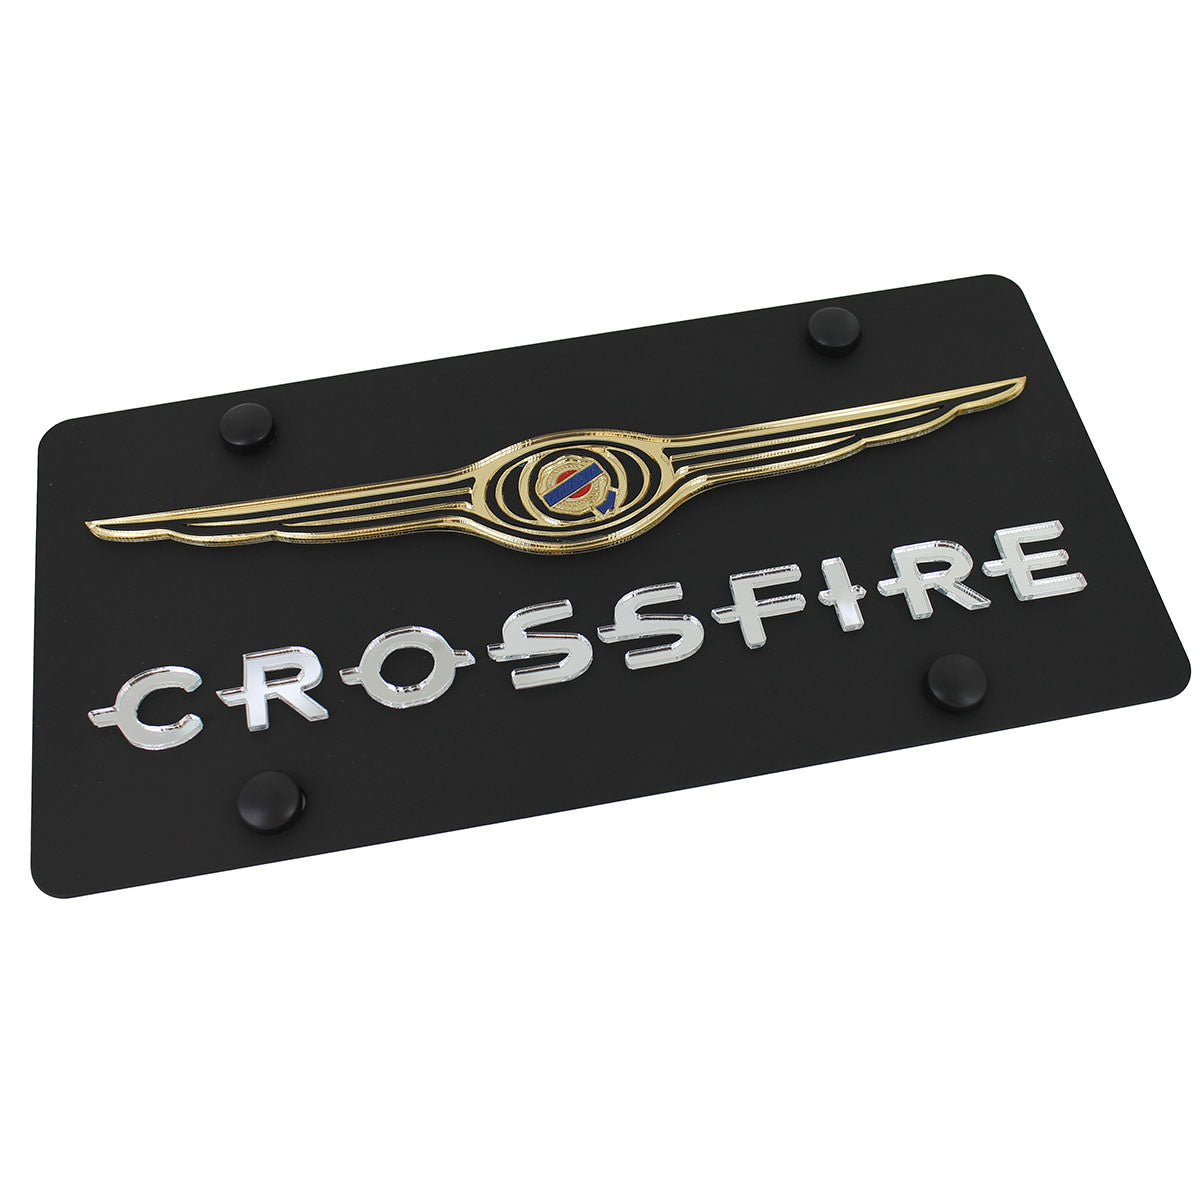 Chrysler Crossfire License Plate